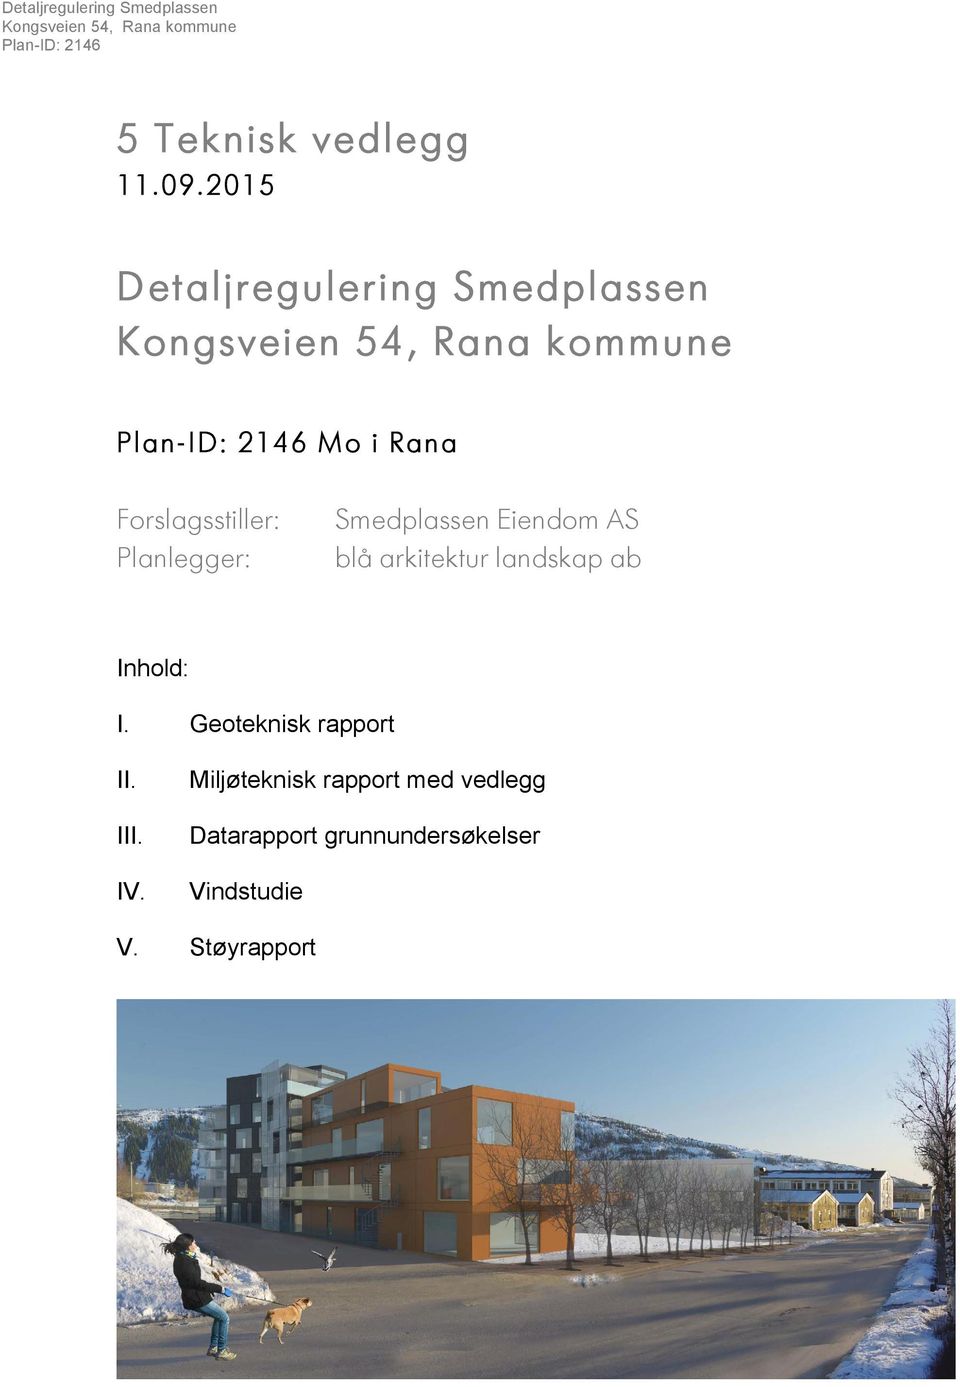 Forslagsstiller: Planlegger: Smedplassen Eiendom AS blå arkitektur landskap ab Inhold: I.